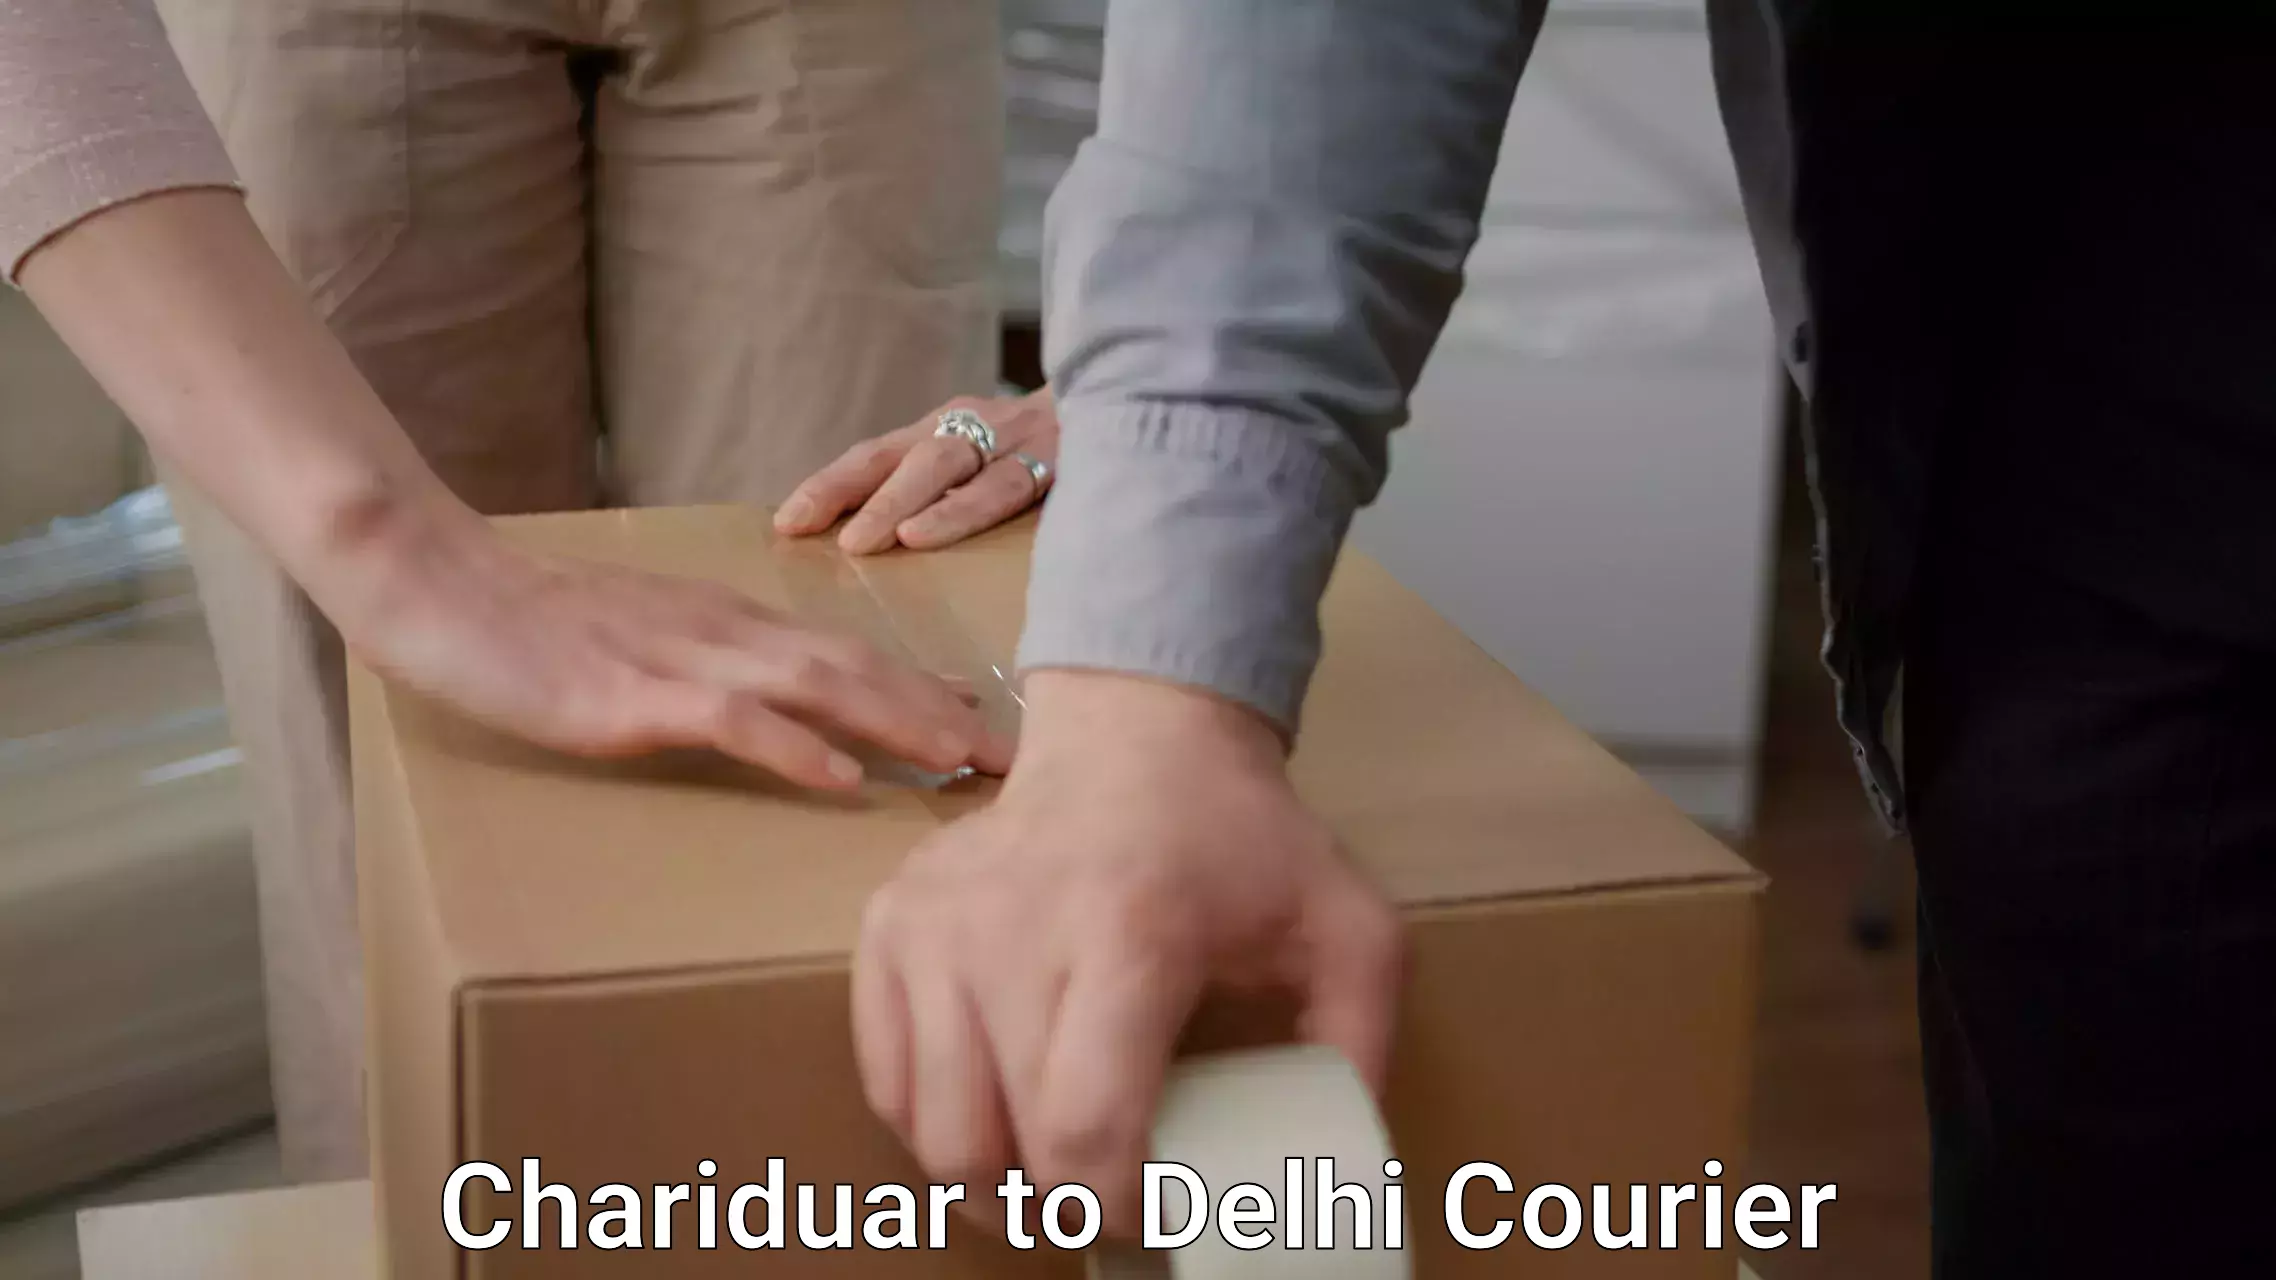 Furniture delivery service Chariduar to Delhi